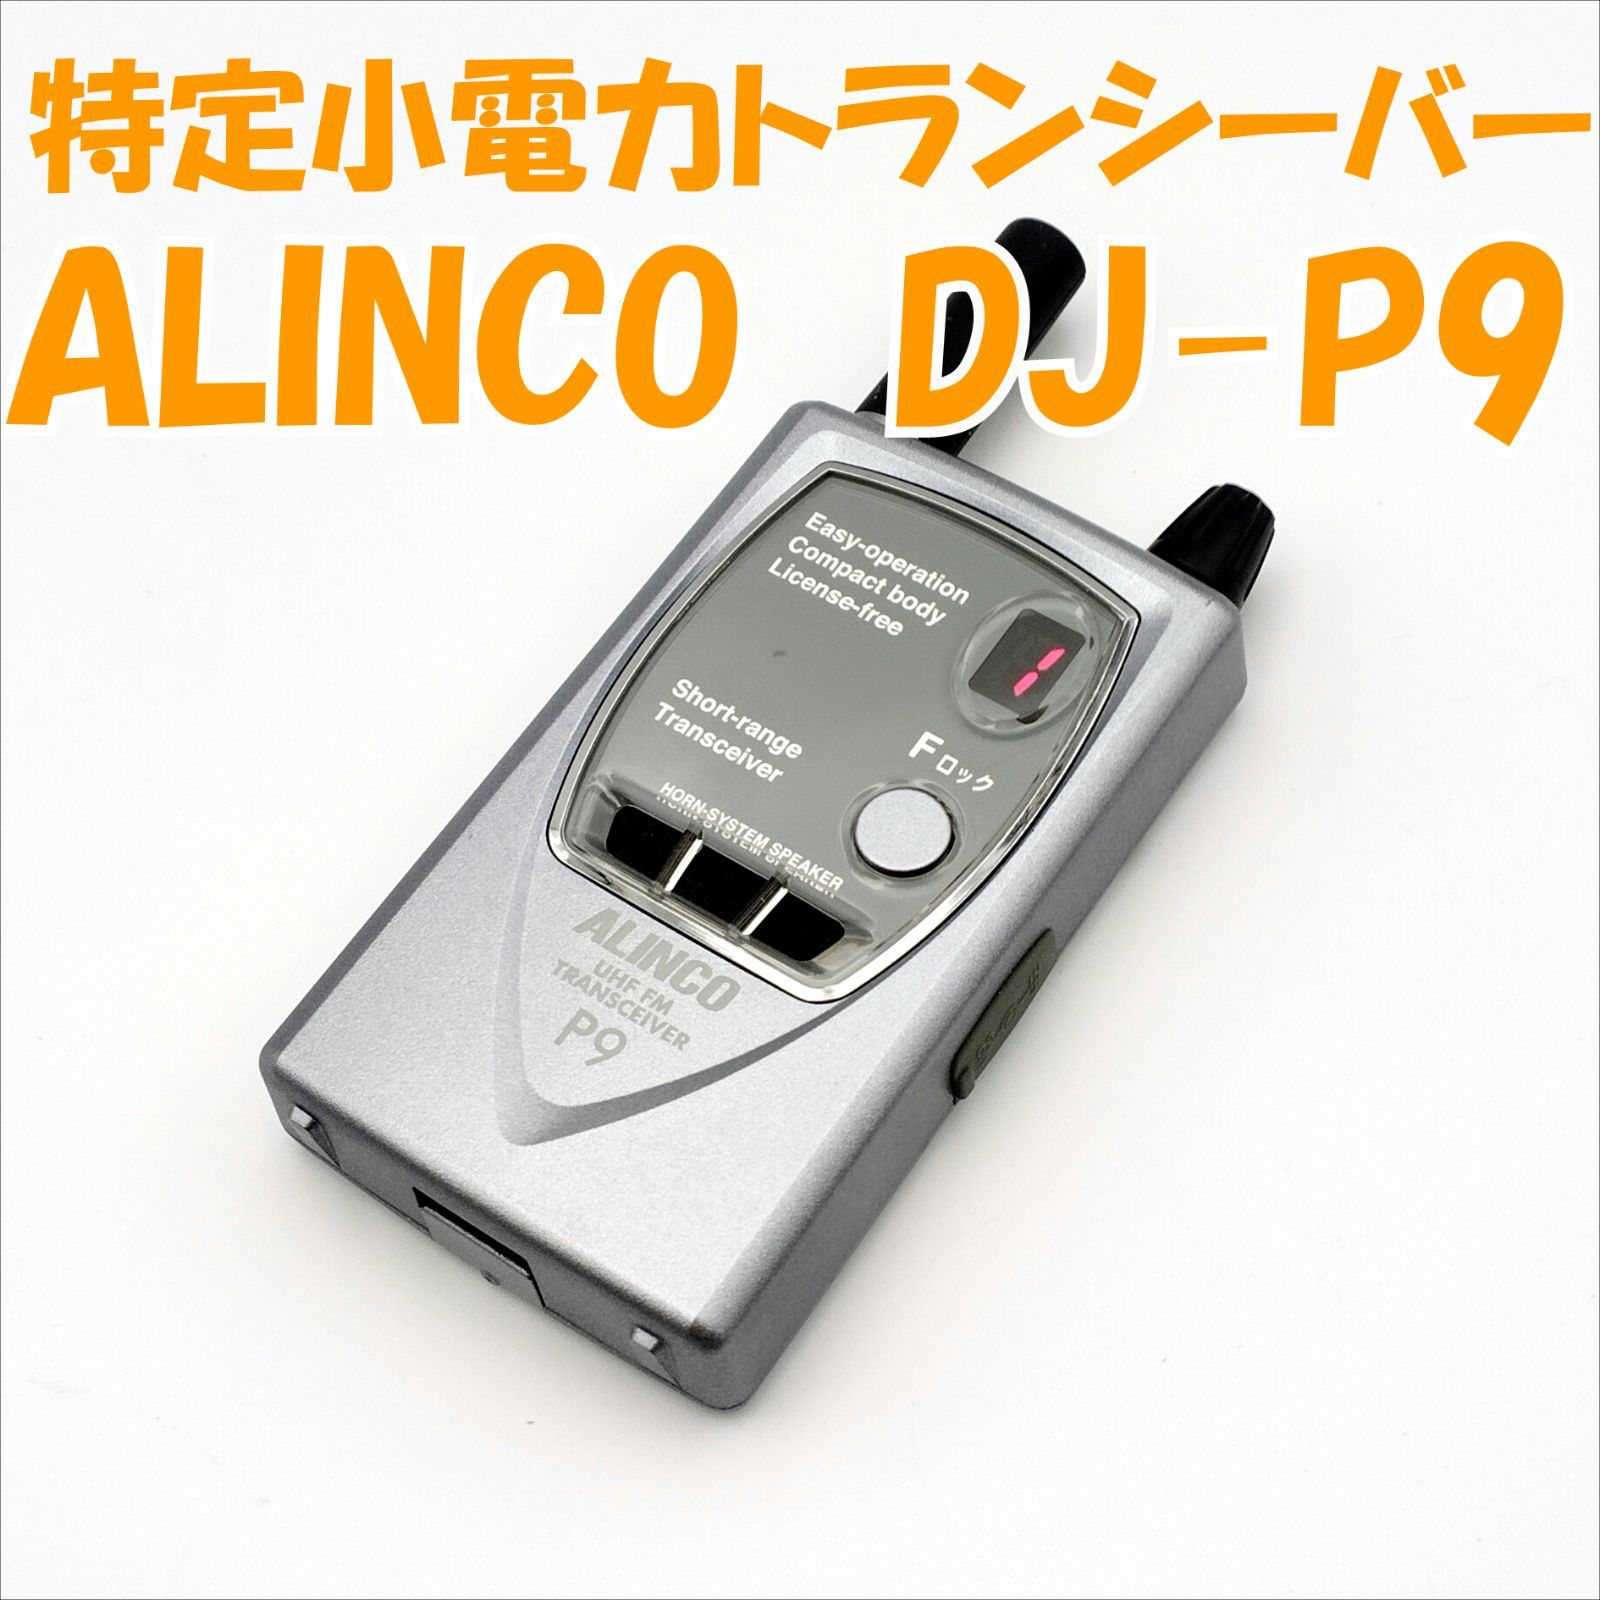 中古品】DJ-P9 ALINCO 特定小電力トランシーバー はなまる倉庫 KMT メルカリ店 メルカリ